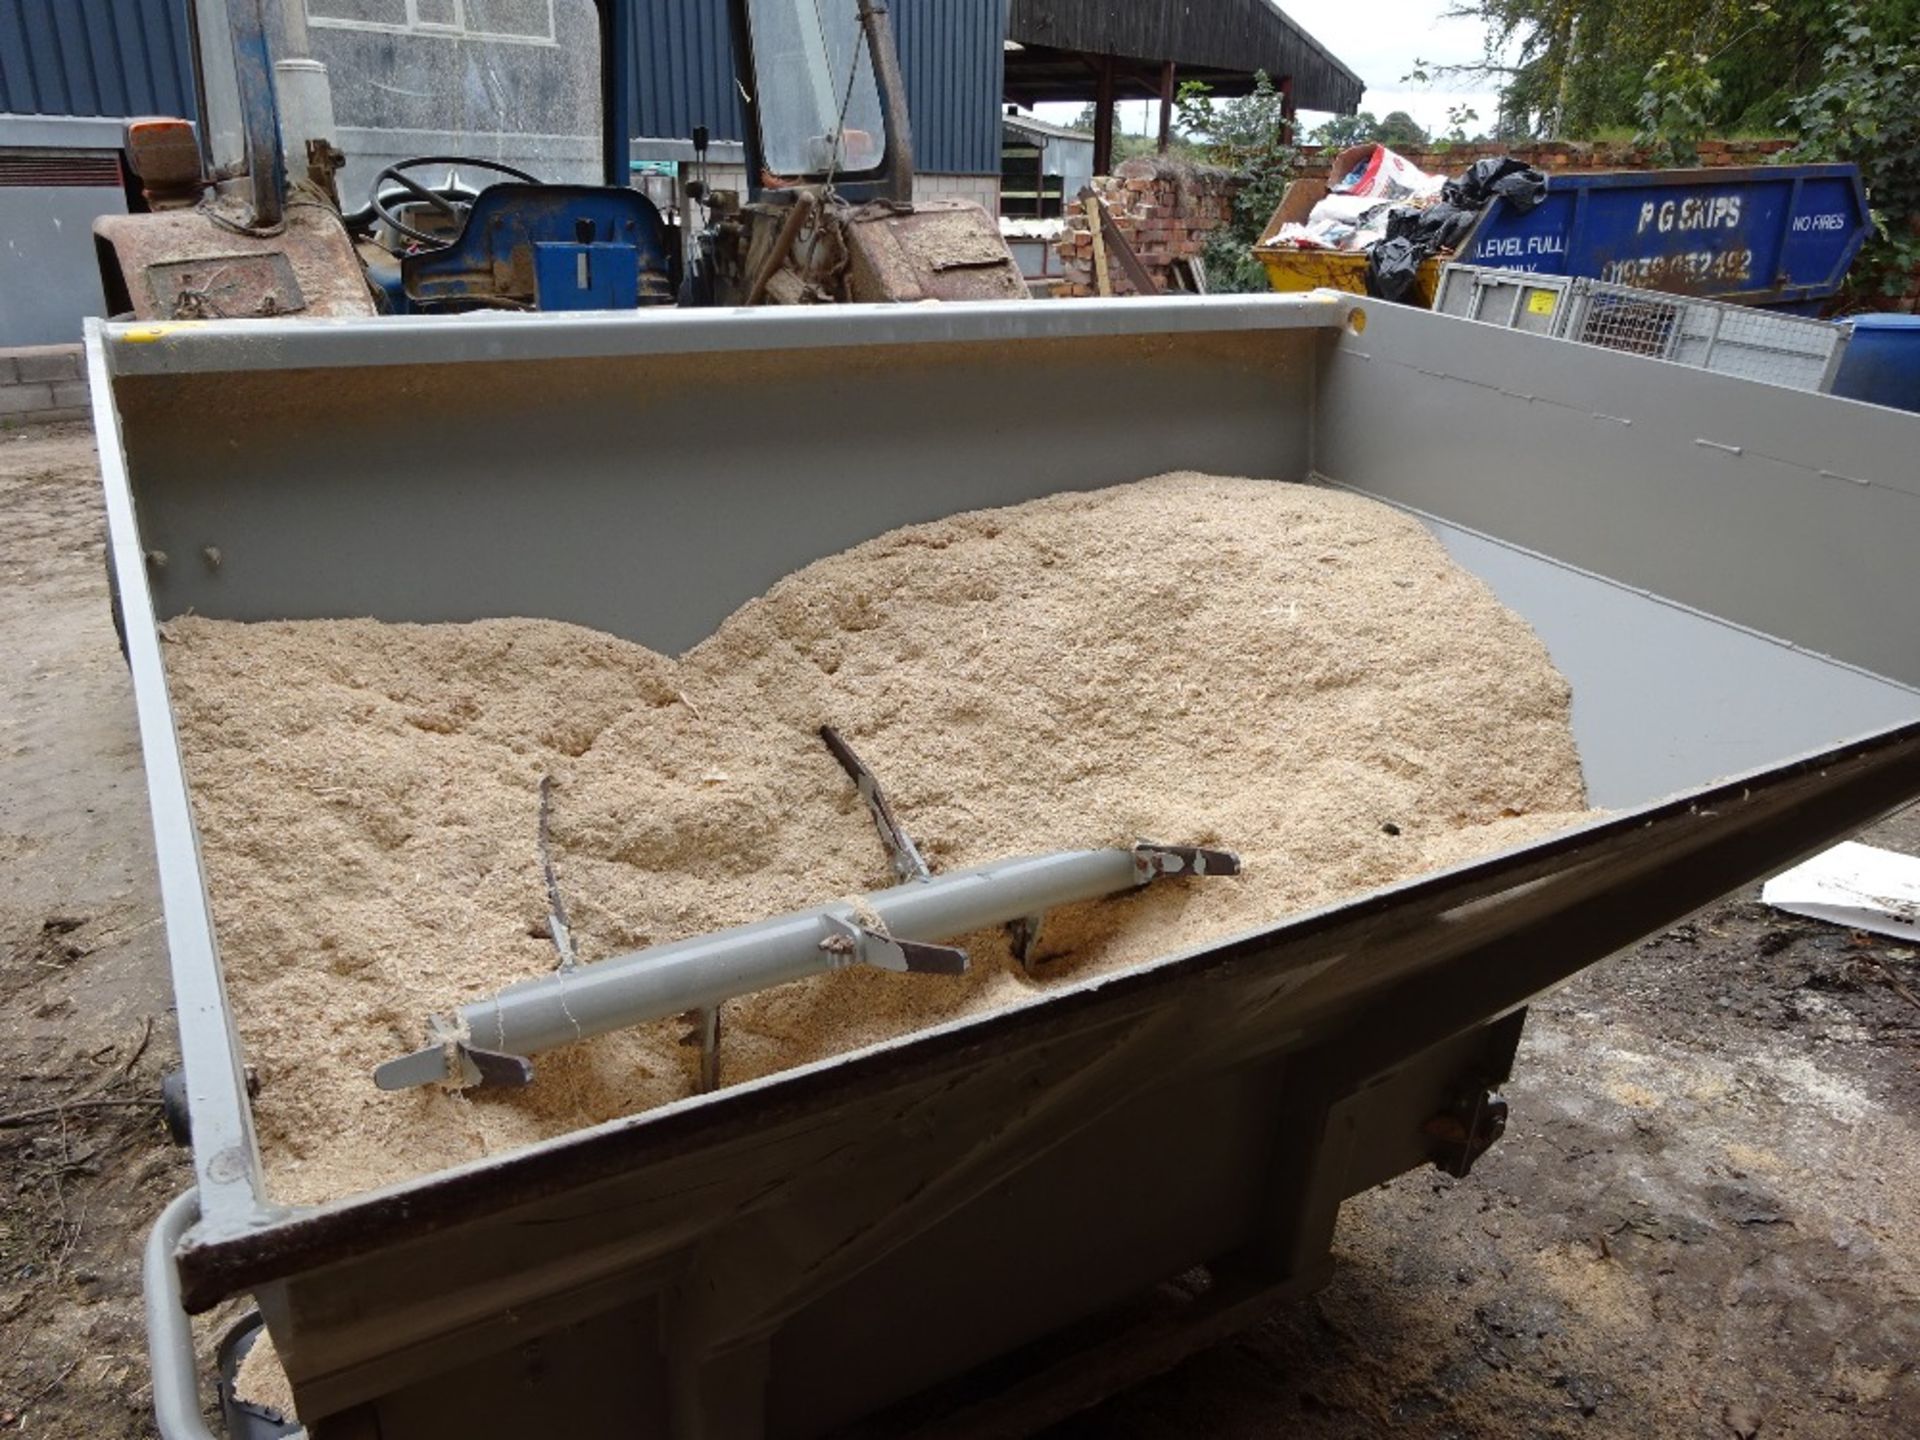 Shelbourne Sawdust Dispenser 2015 - Image 2 of 3